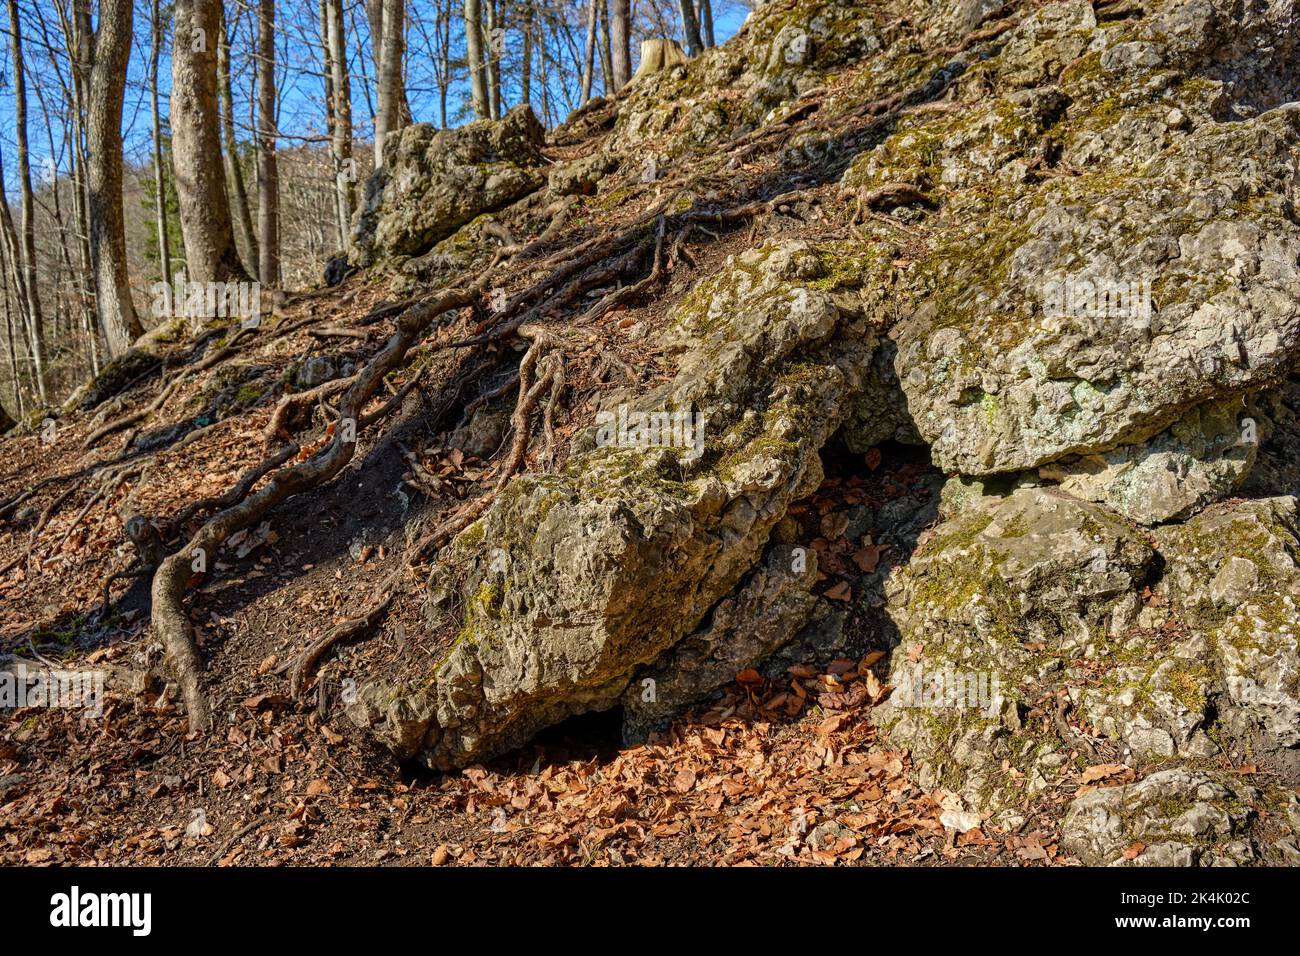 Système racinaire d'arbres et de roche calcaire saillante, ici sur la base d'une zone forestière dans l'Alb souabe près de Burladingen, Bade-Wurtemberg, Allemagne. Banque D'Images